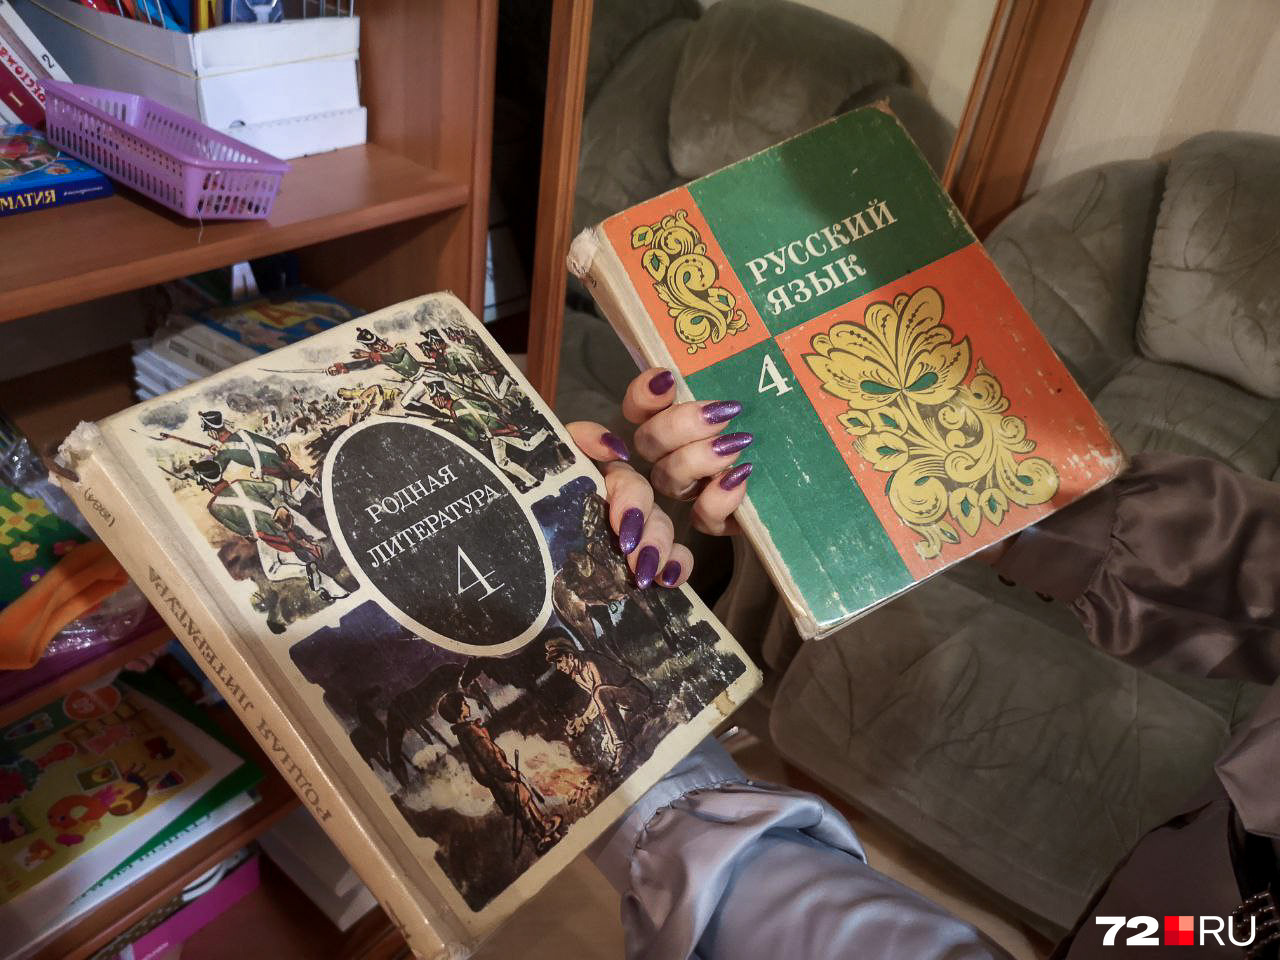 Педагог показала учебники, по которым учатся дети в ее школе